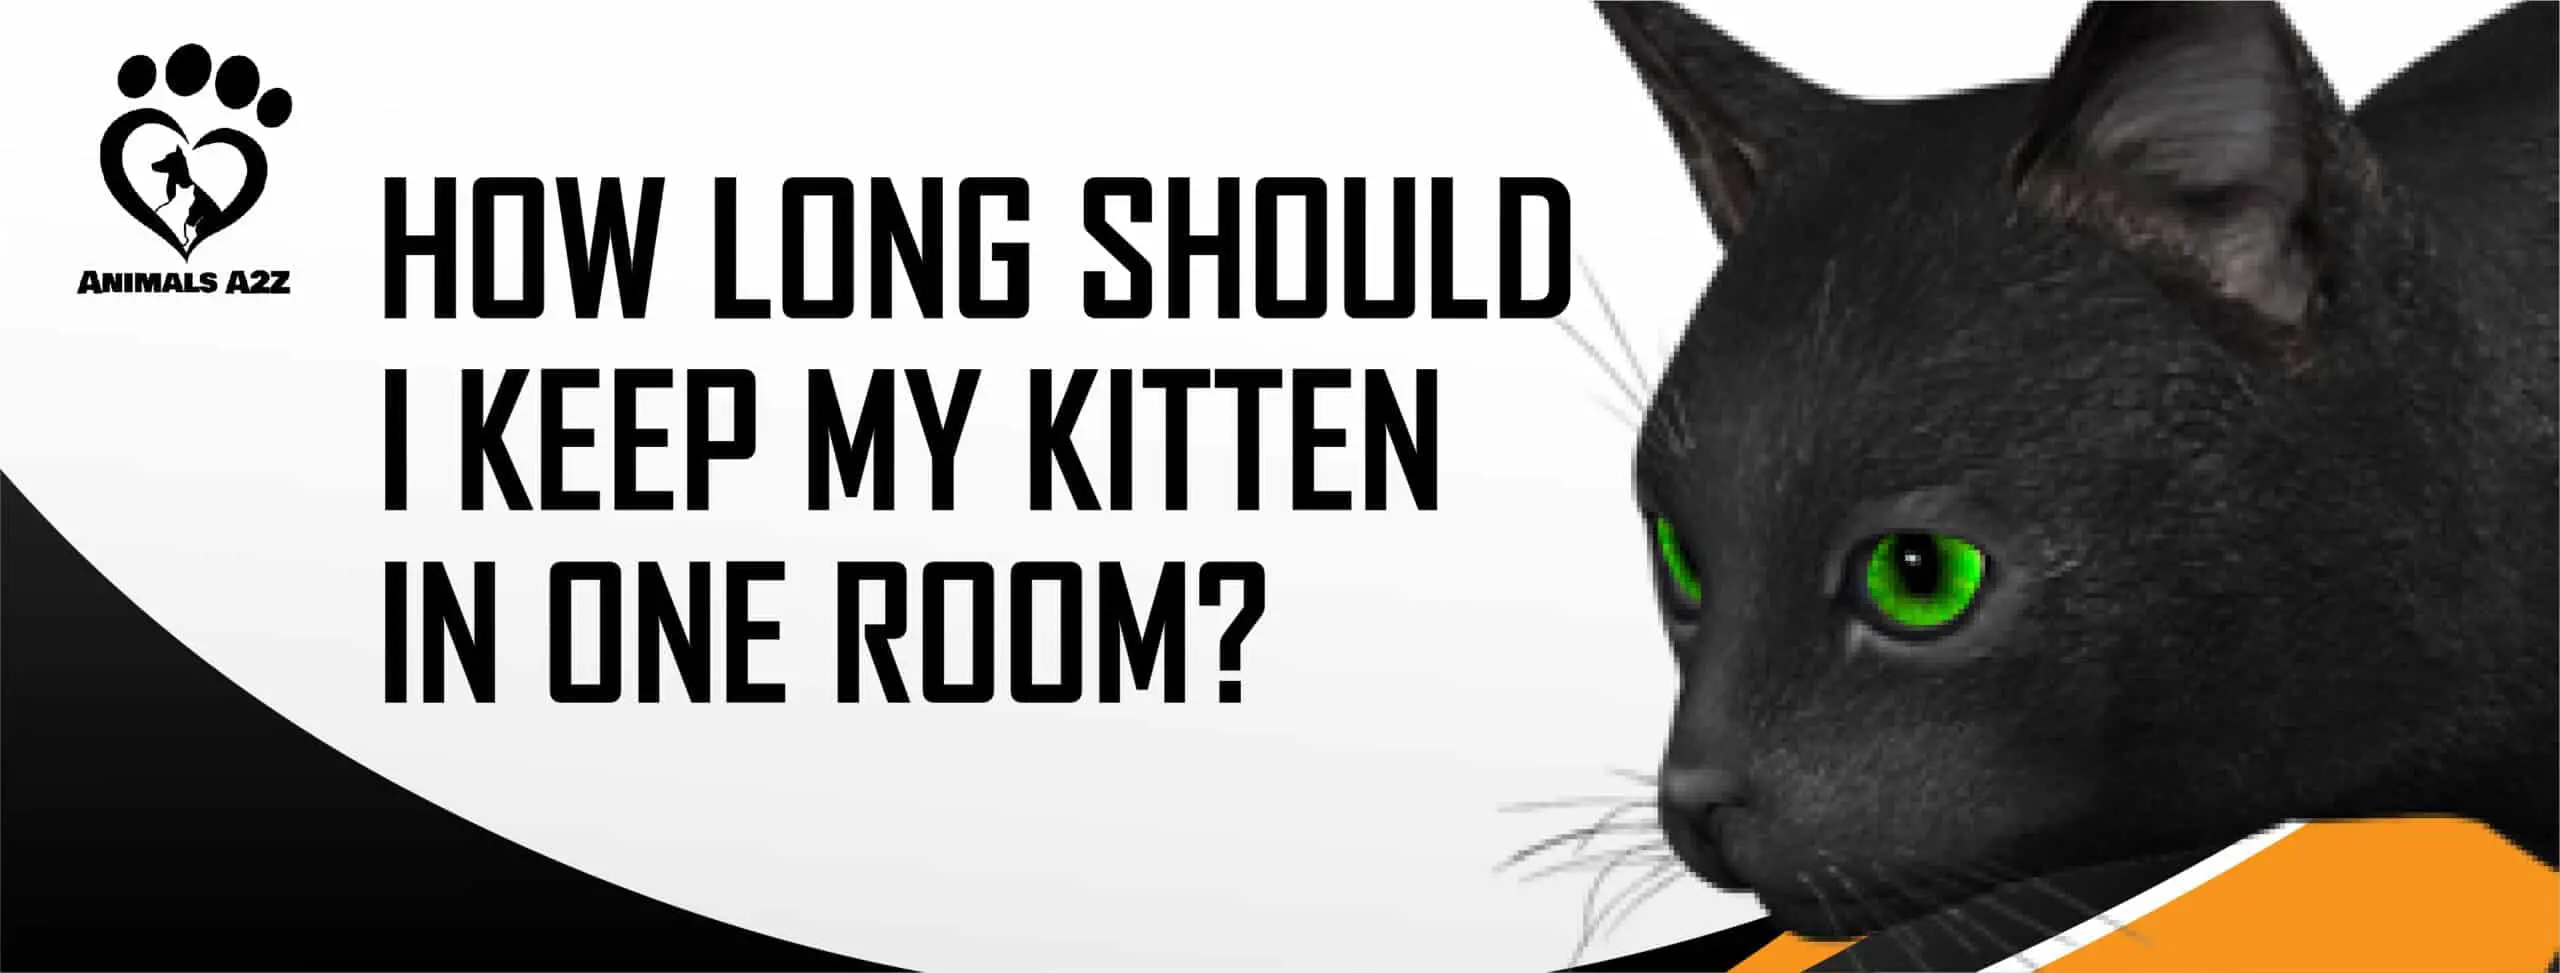 ¿Cuánto tiempo debo mantener a mi gatito en una habitación?